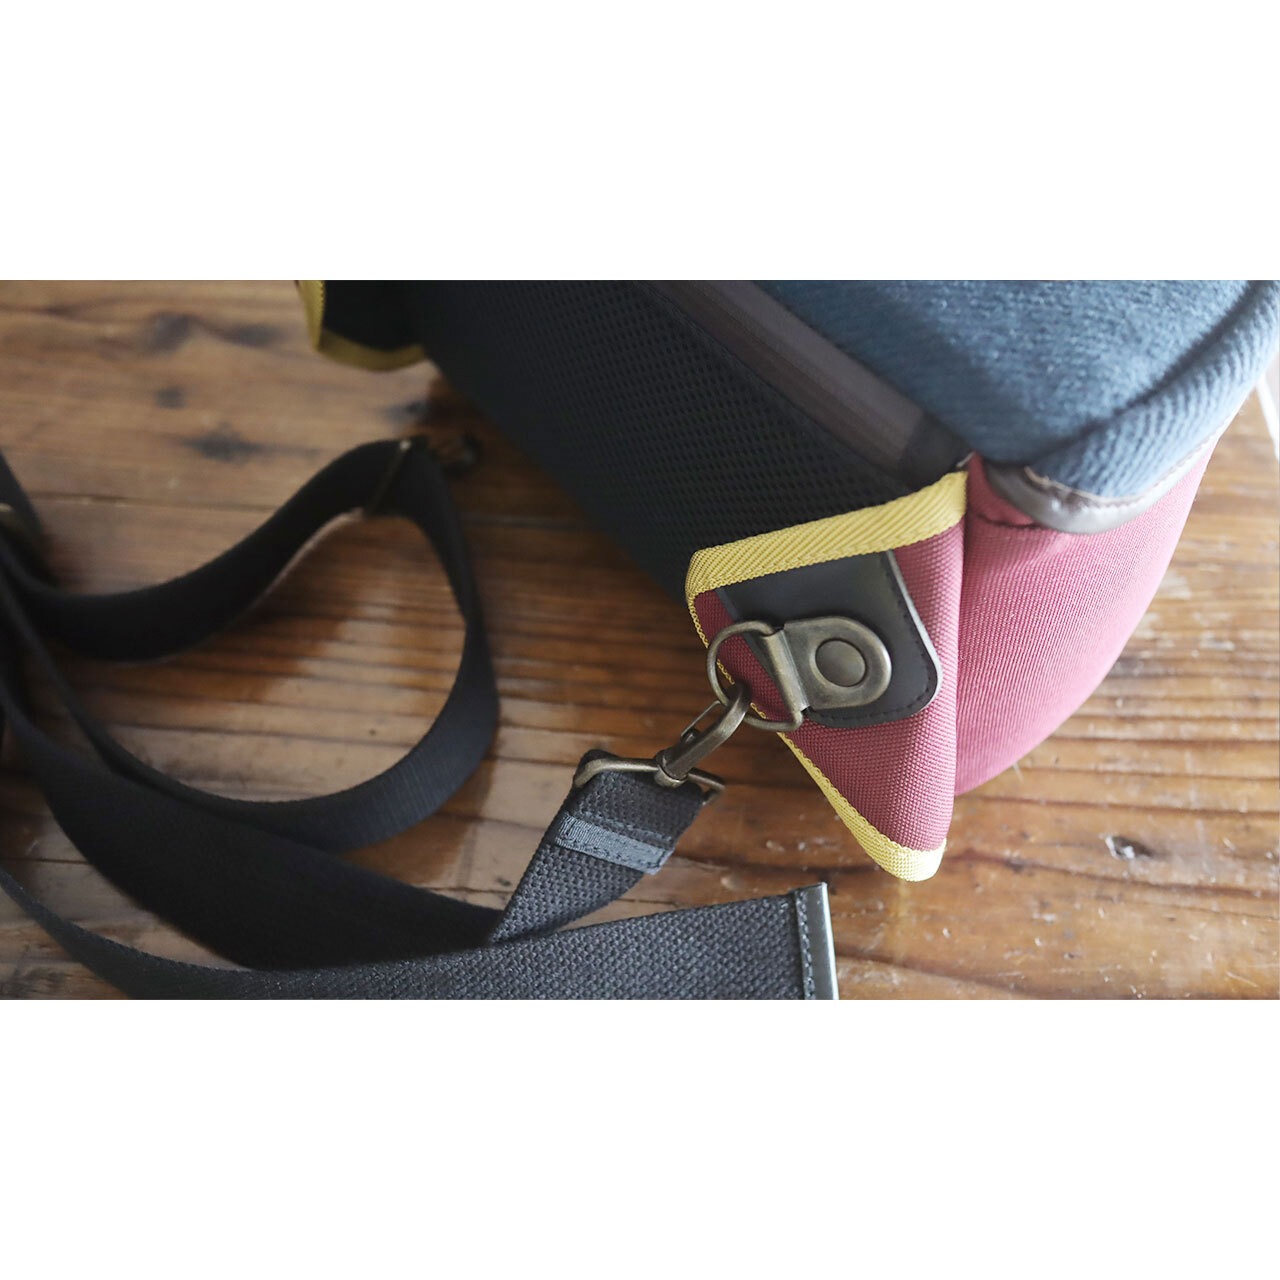 カメラバッグ：araragi camera bag - Hemp cotton top (グレー×オールドローズ)